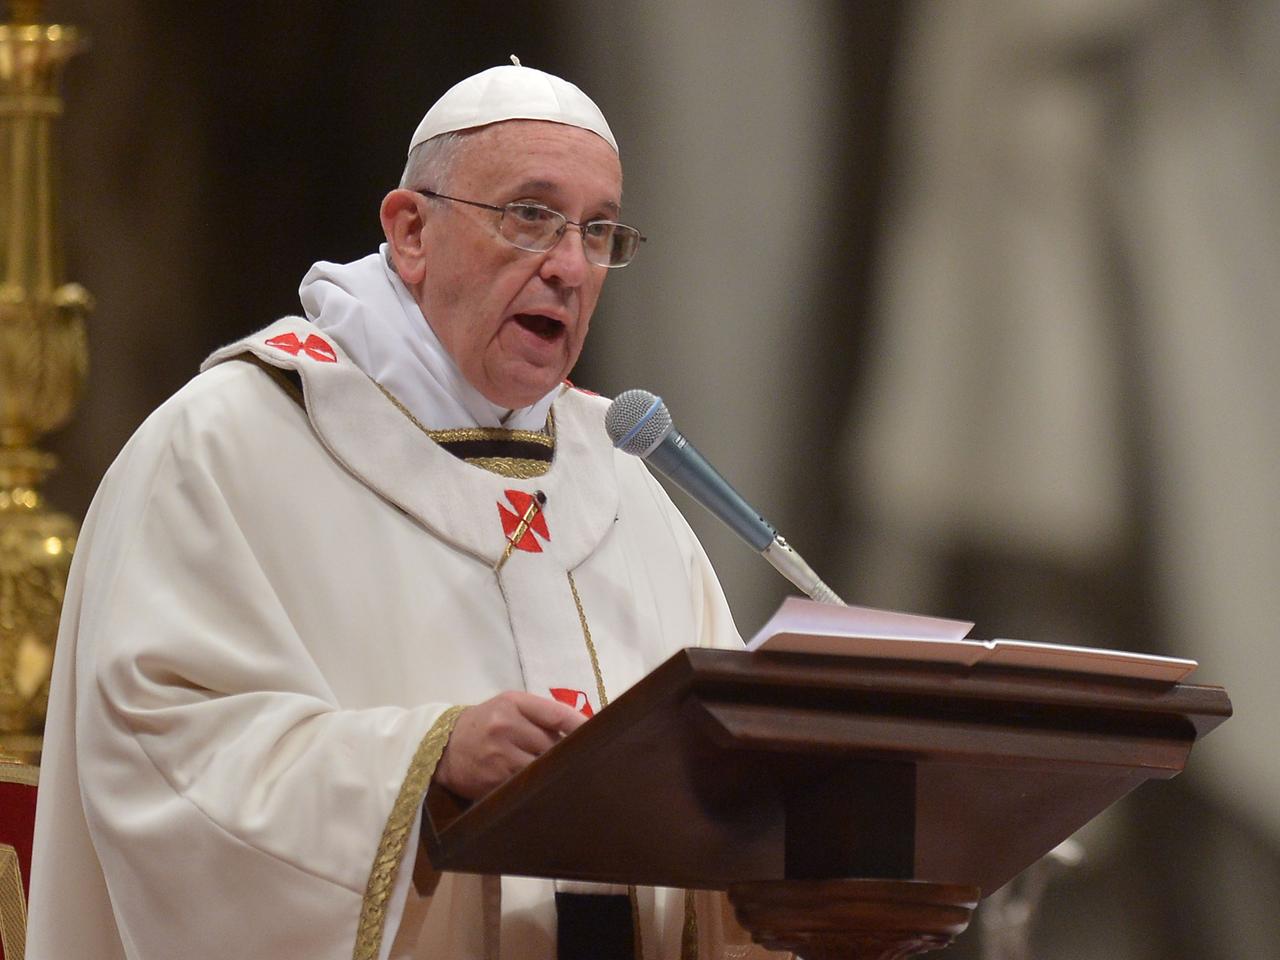 Papst Franziskus spricht hinter einem Rednerpult stehend in ein Mikrofon.